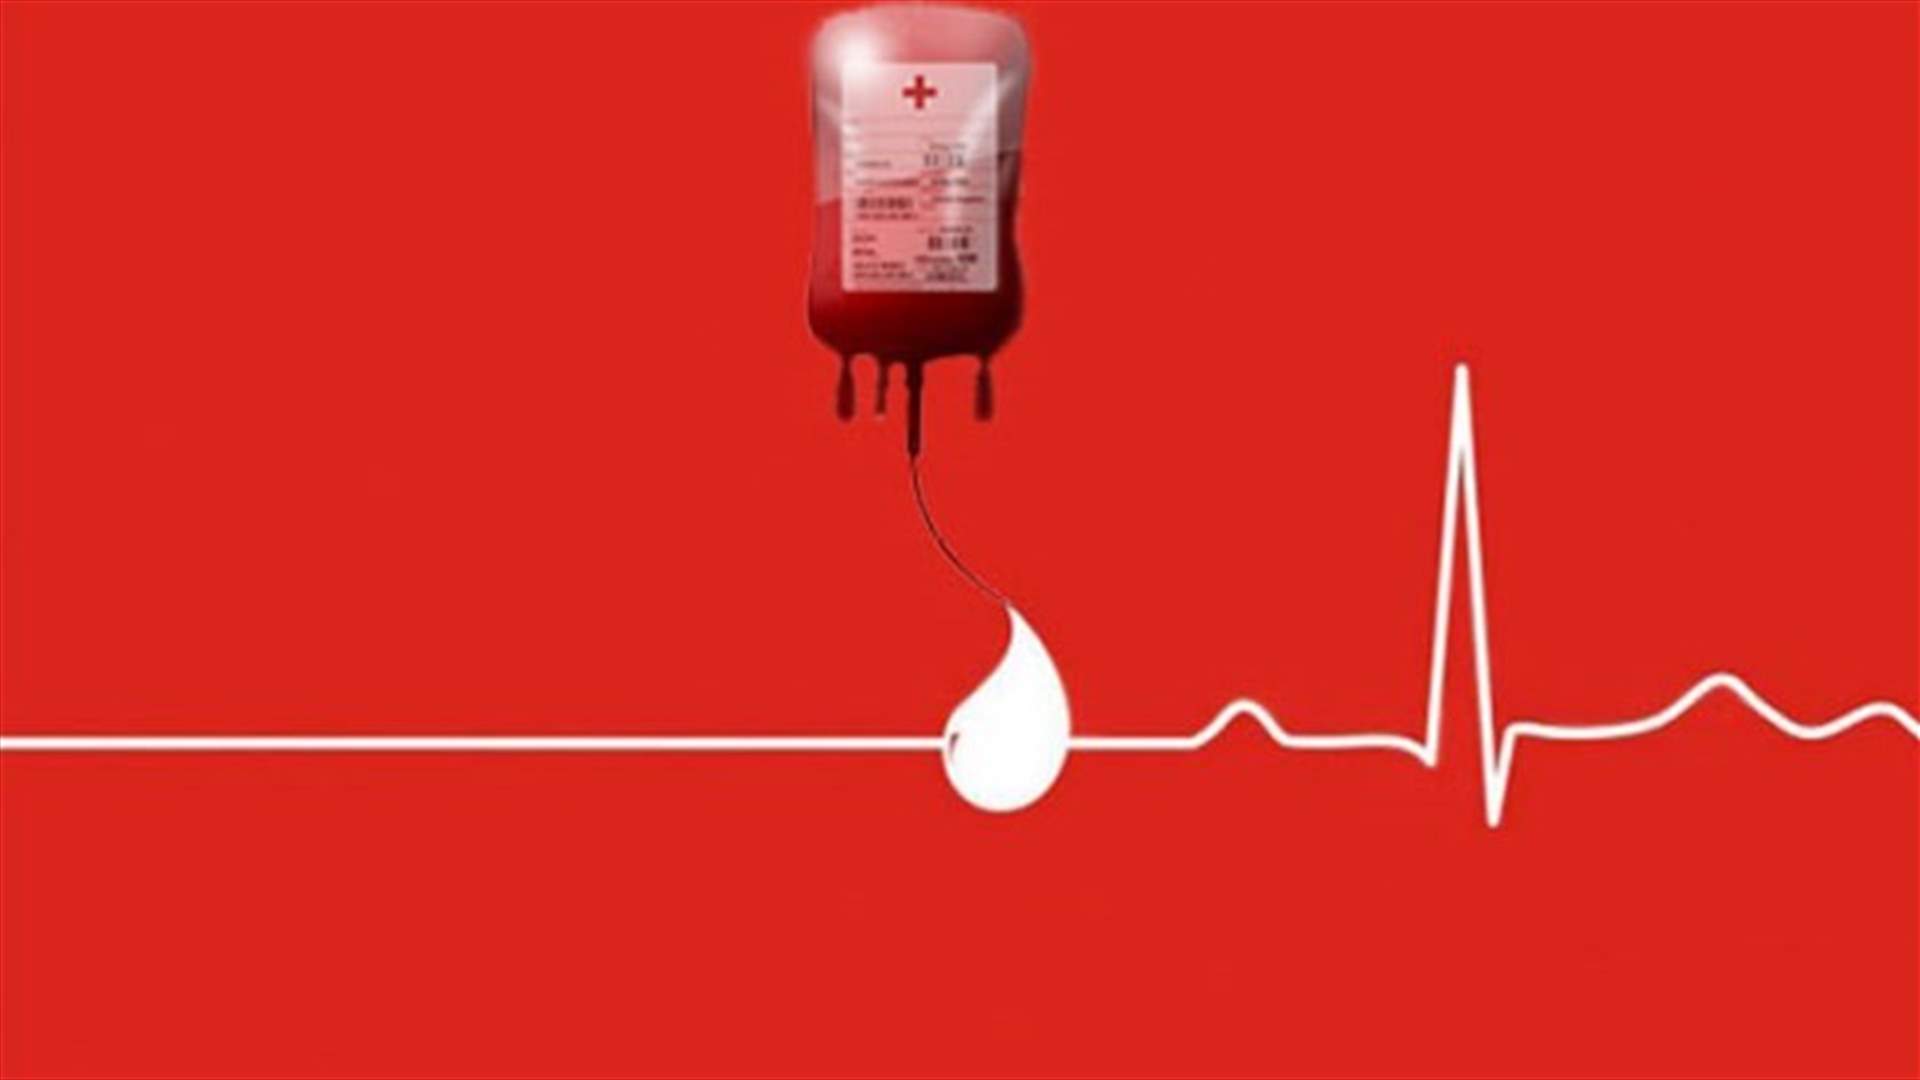 مريضة في مستشفى سيدة المعونات - جبيل بحاجة ماسة إلى دم من فئة O+... للتبرع، الإتصال على: 76542546